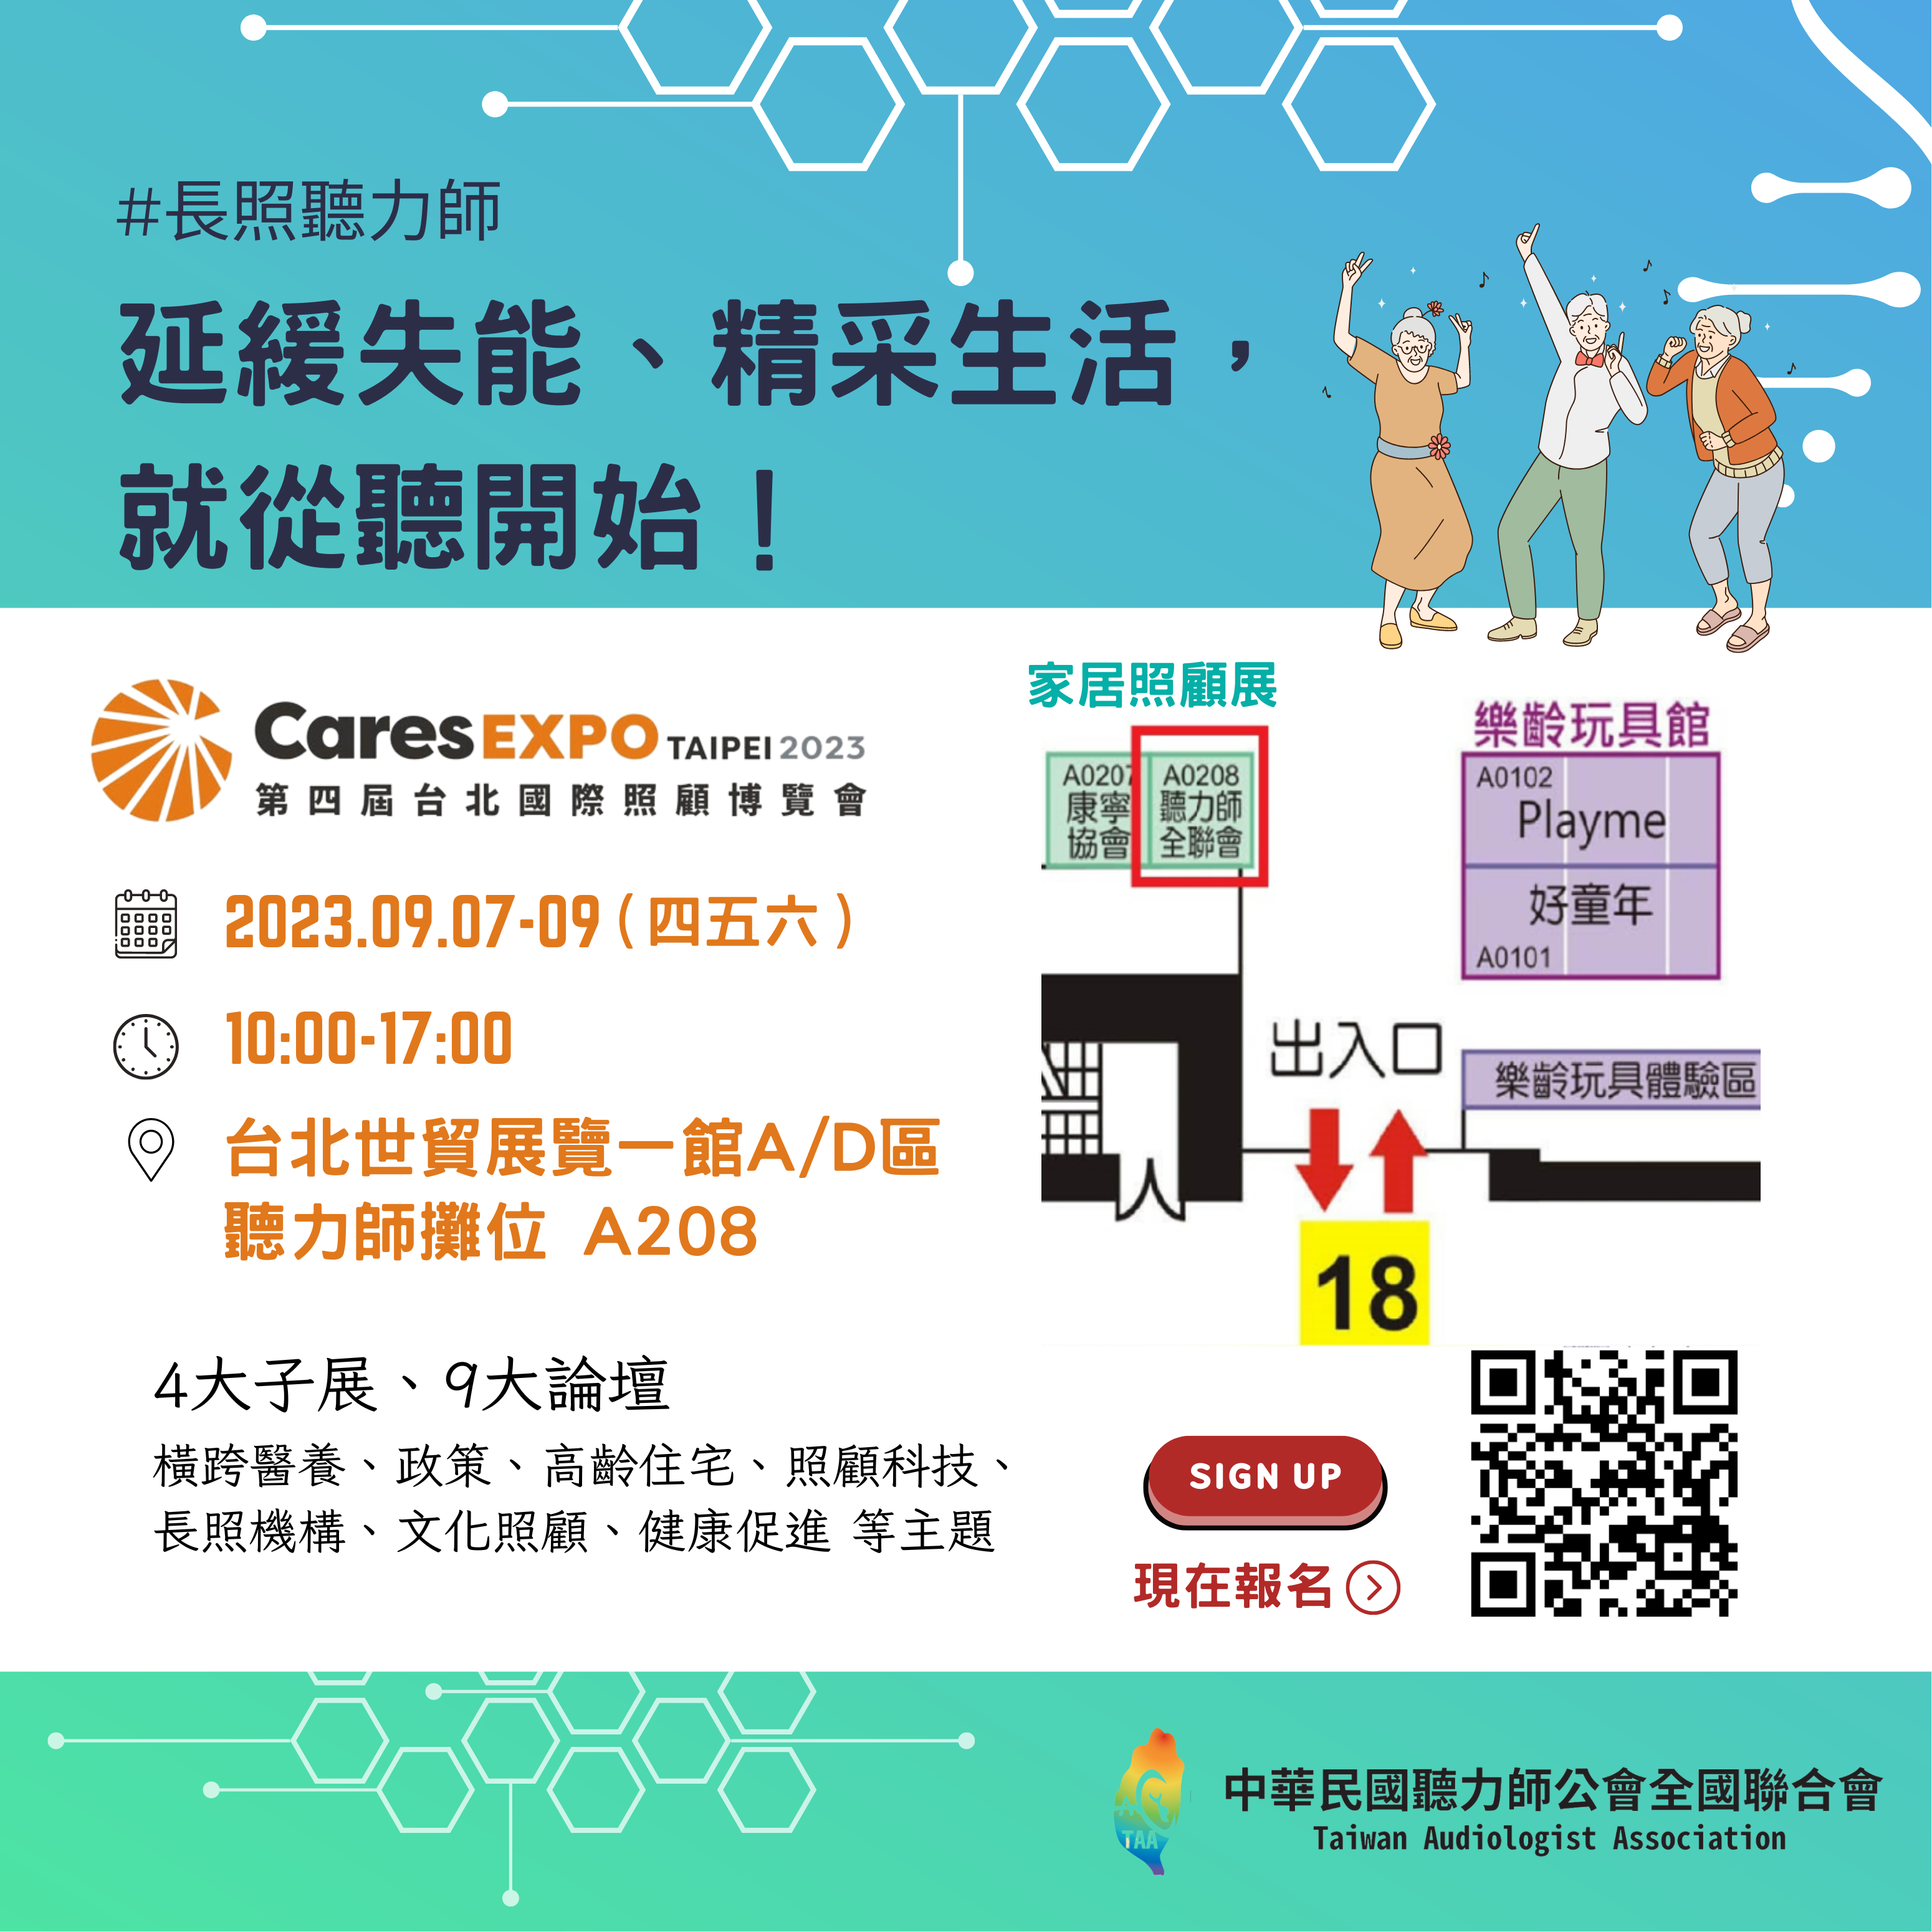 【活動預告】2023年9月7~9日第四屆台北國際照顧博覽會